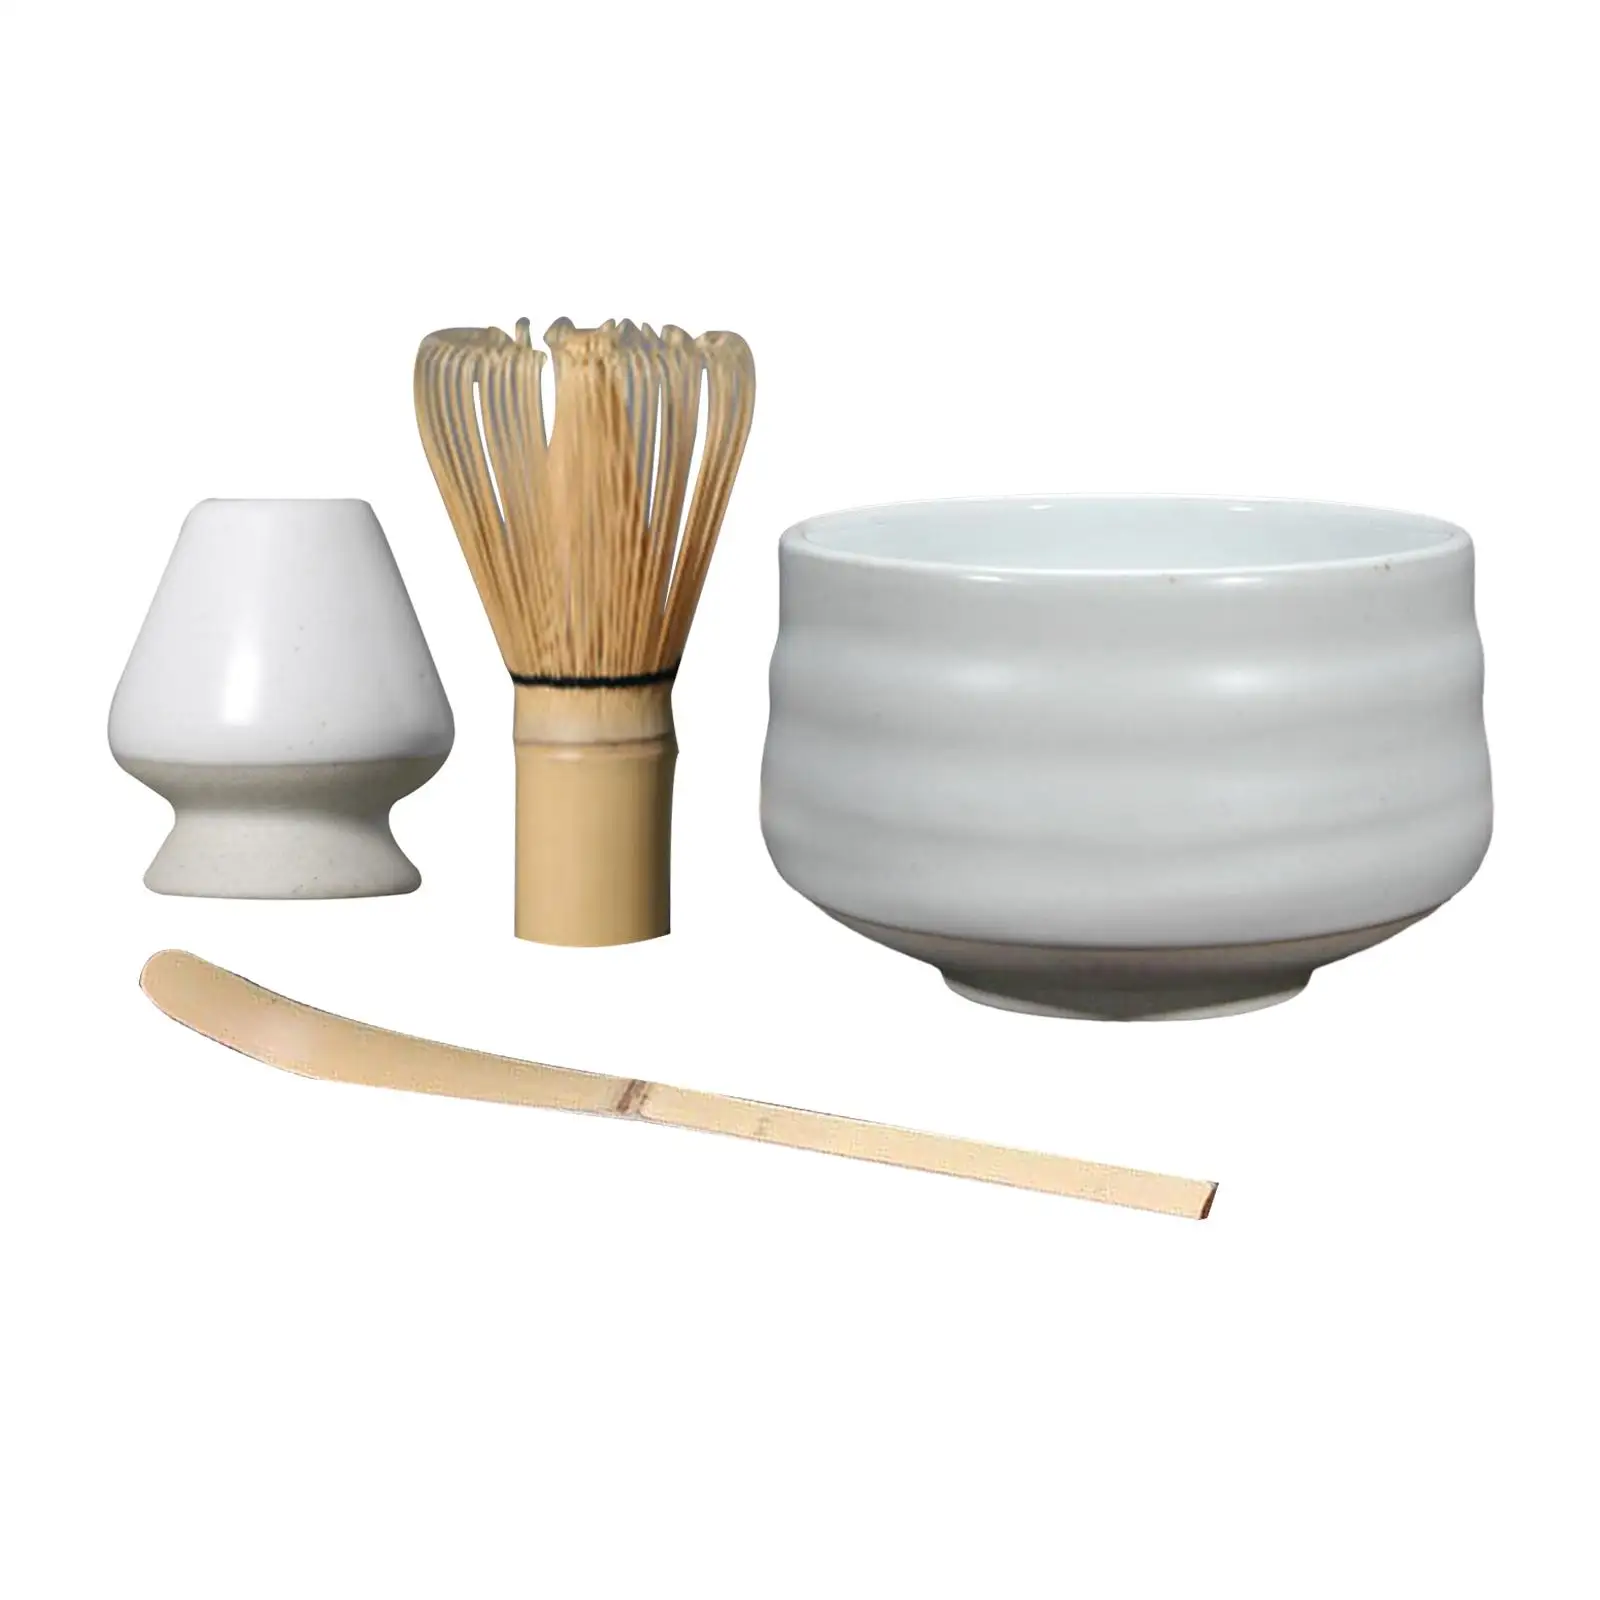 Japanese Whisk Holder, for Tea Room Bamboo Whisk, Ceramic Whisk Holder Matcha Whisk, Traditional Scoop, Chasen Stand,